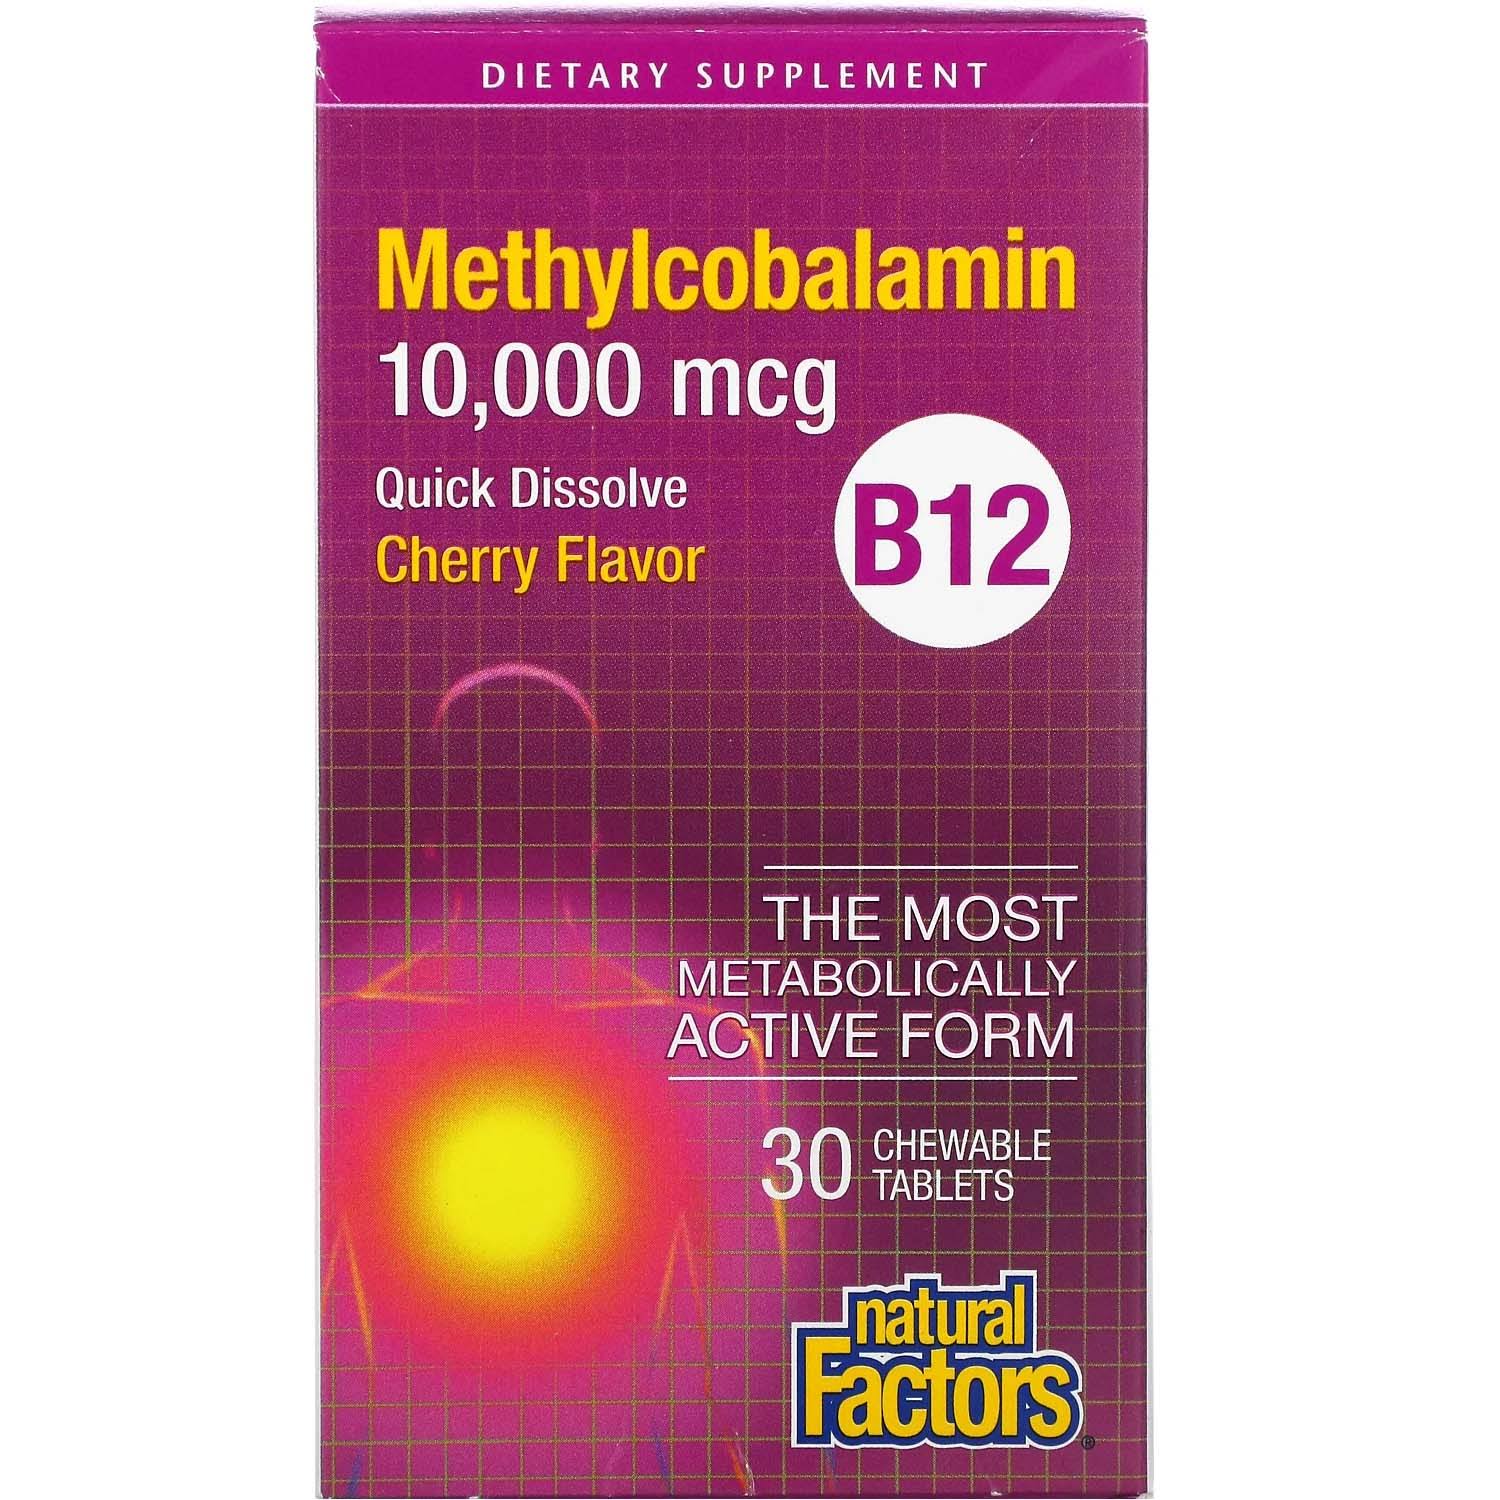 B12 Methylcobalamin 10,000 mcg Natural Factors 30 Chewable